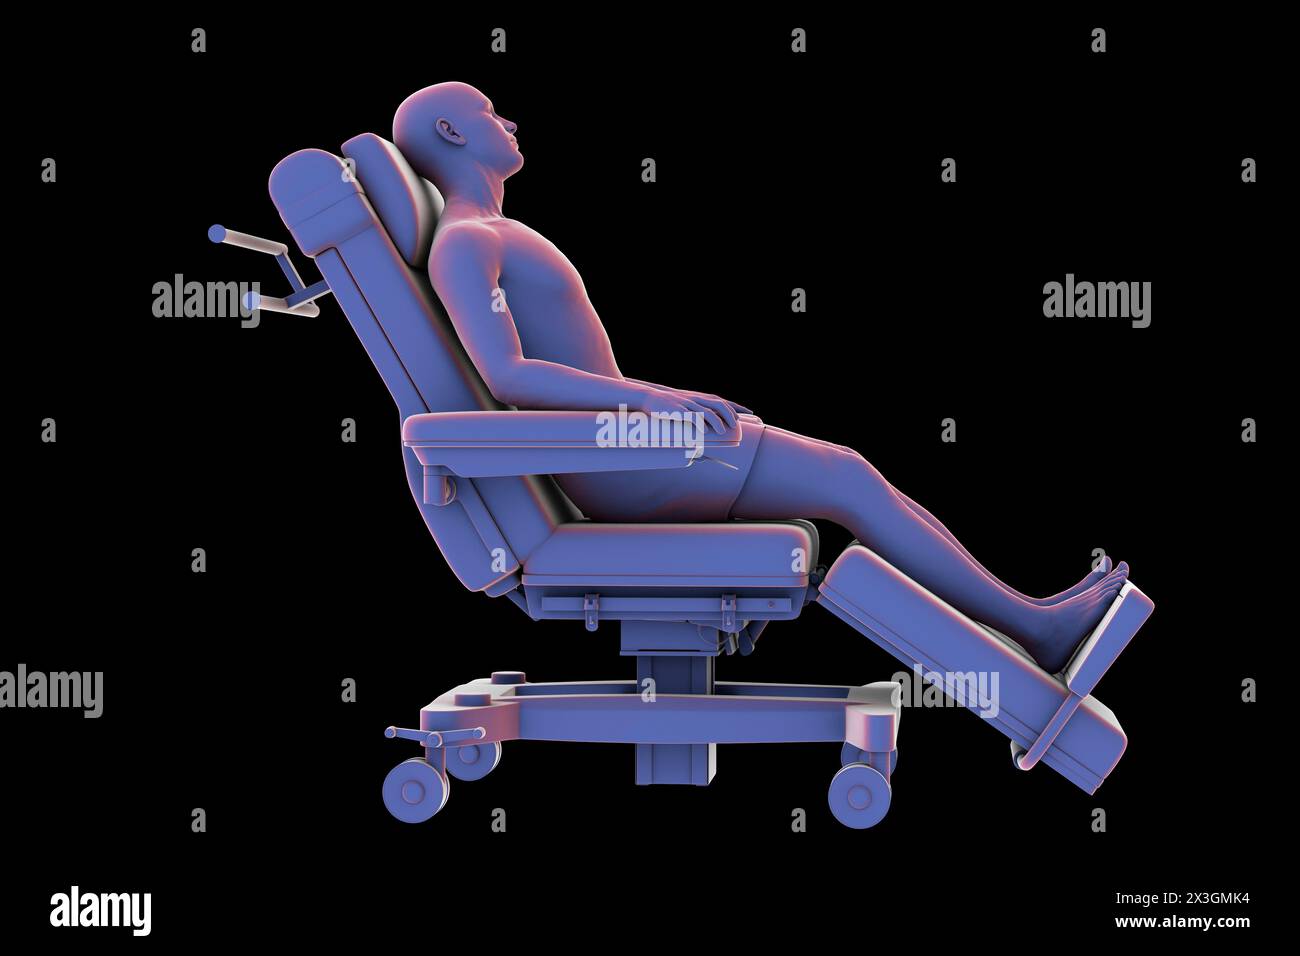 Abbildung eines Patienten auf einem medizinischen Lehnstuhl als Symbol für die Mobilität und den Transport des Patienten in einer klinischen Umgebung. Stockfoto